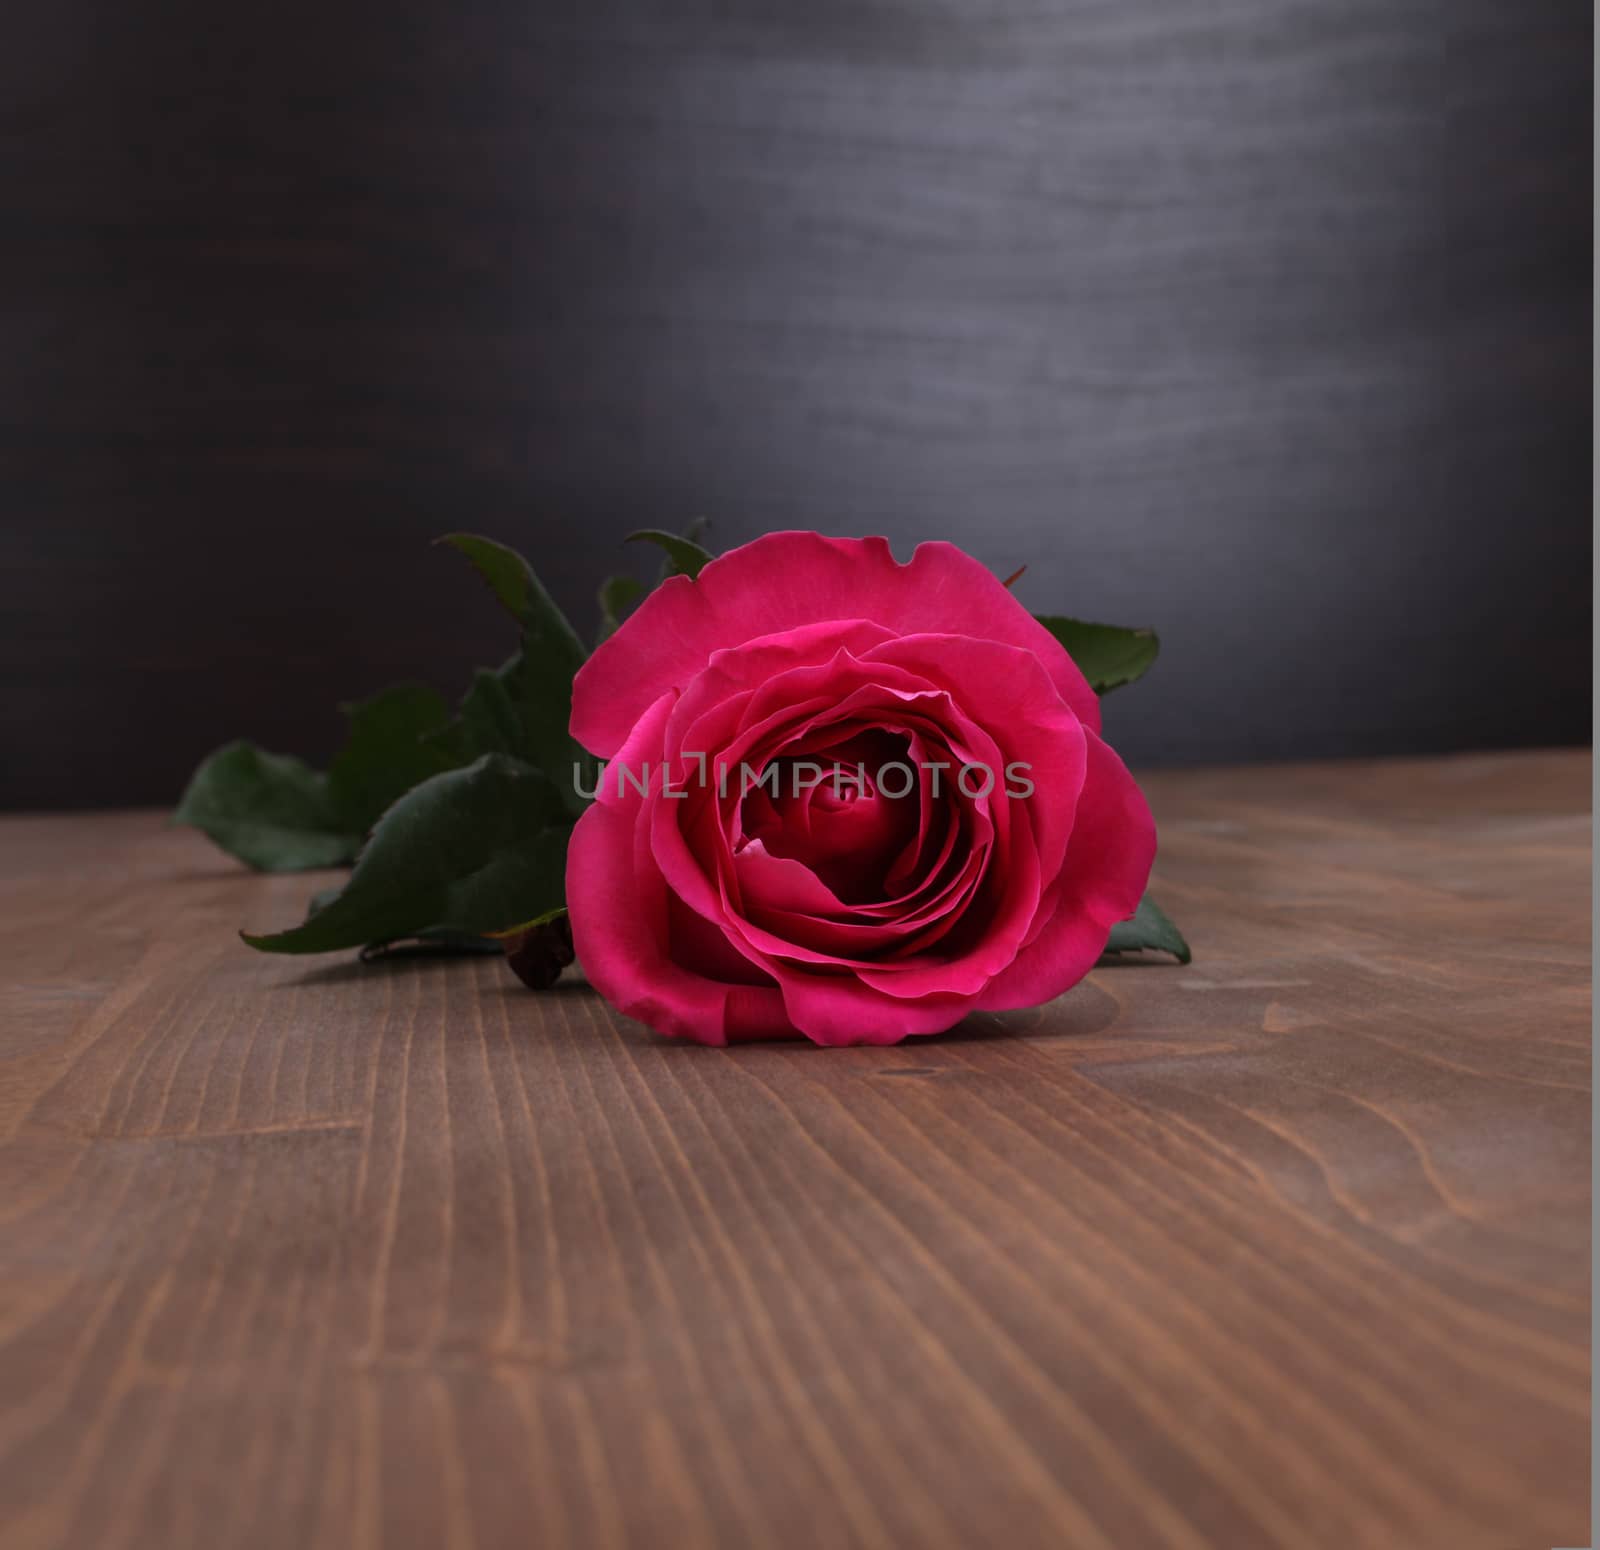 rose on wood background